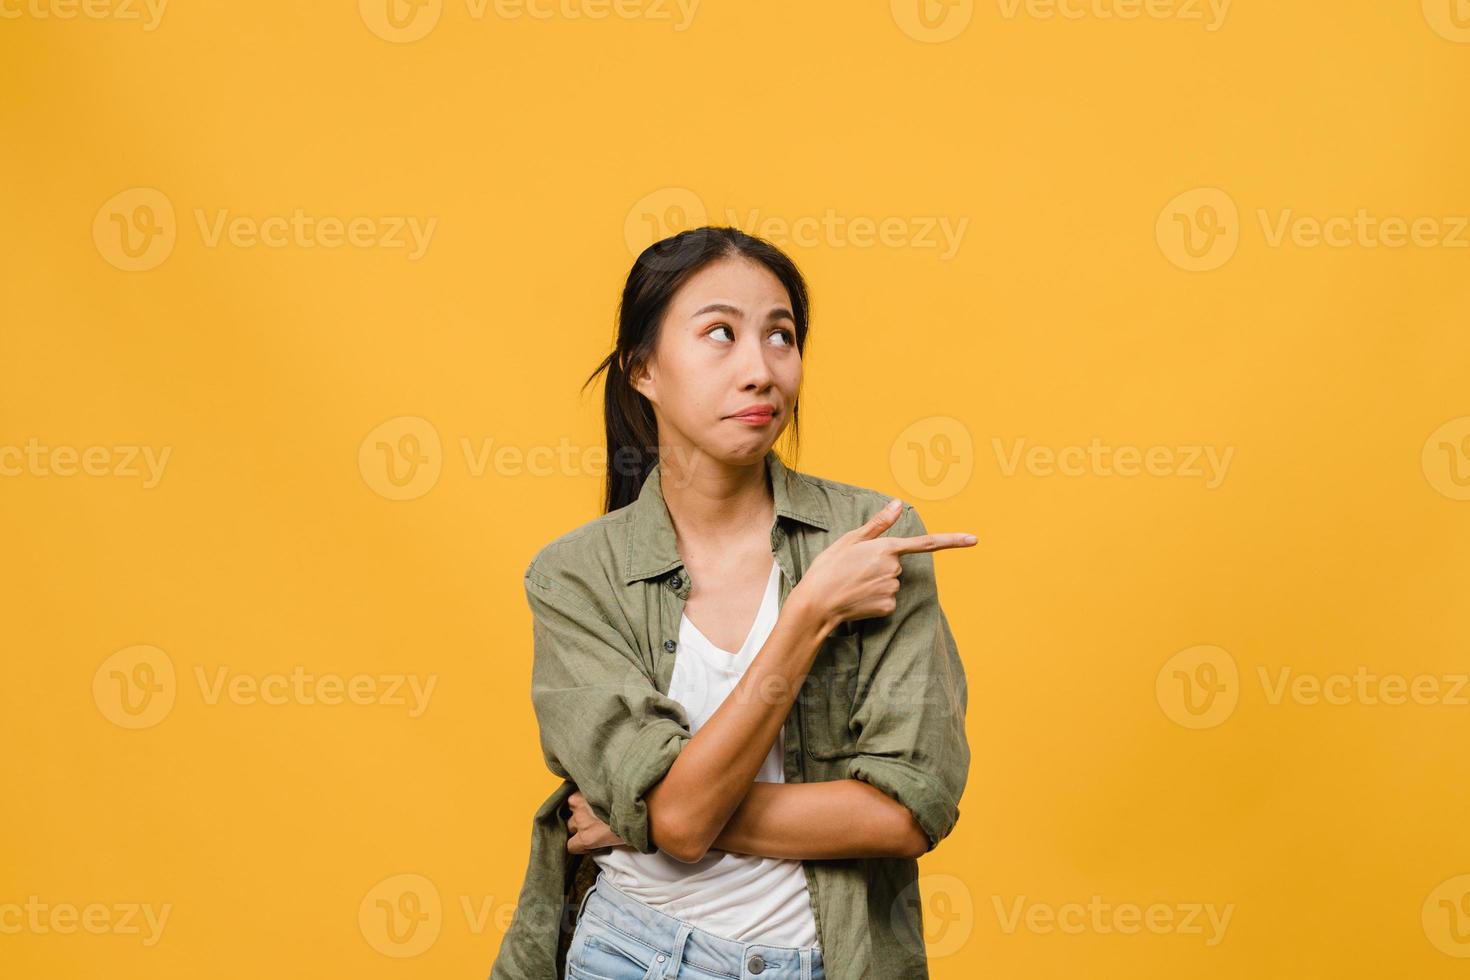 la giovane donna asiatica mostra qualcosa di straordinario nello spazio vuoto con espressione negativa, urla eccitate, pianto arrabbiato emotivo in abbigliamento casual isolato su sfondo giallo. concetto di espressione facciale. foto